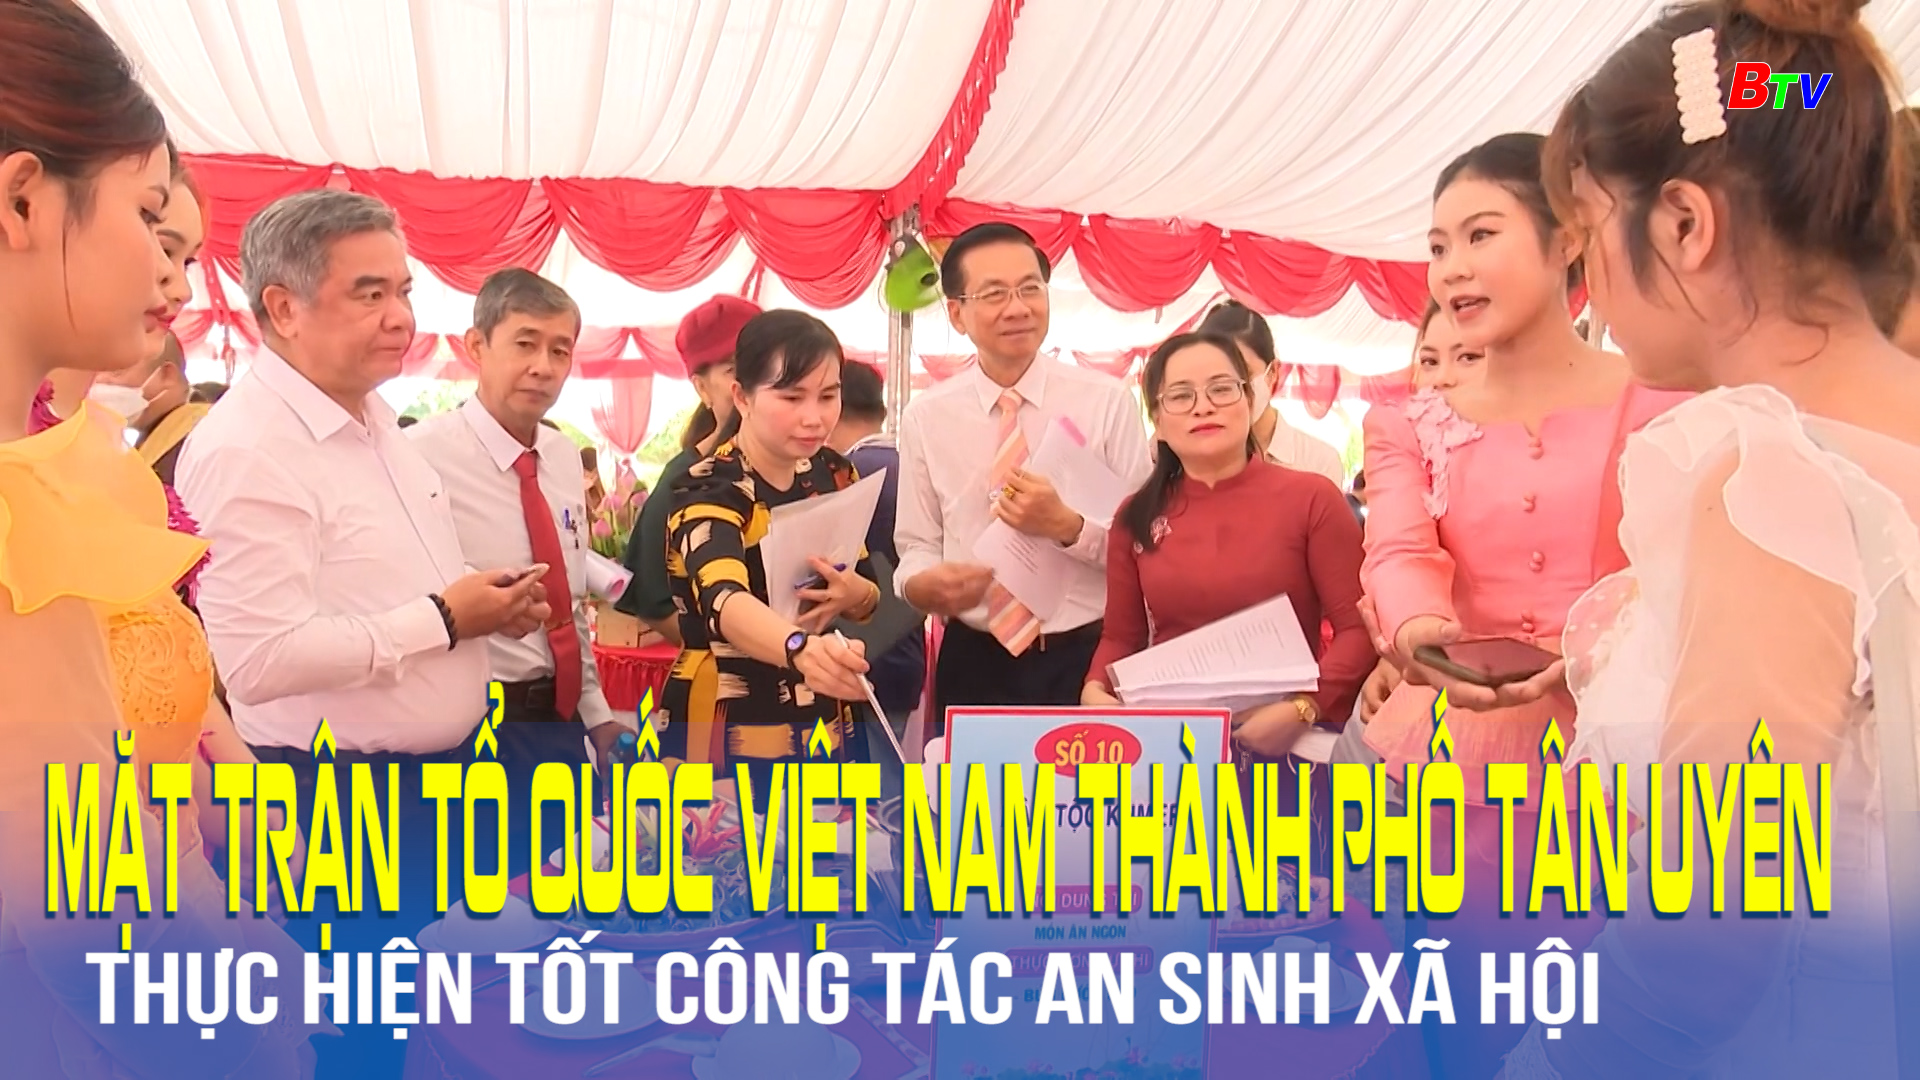 Mặt trận tổ quốc Việt Nam Thành phố Tân Uyên thực hiện tốt công tác an sinh xã hội